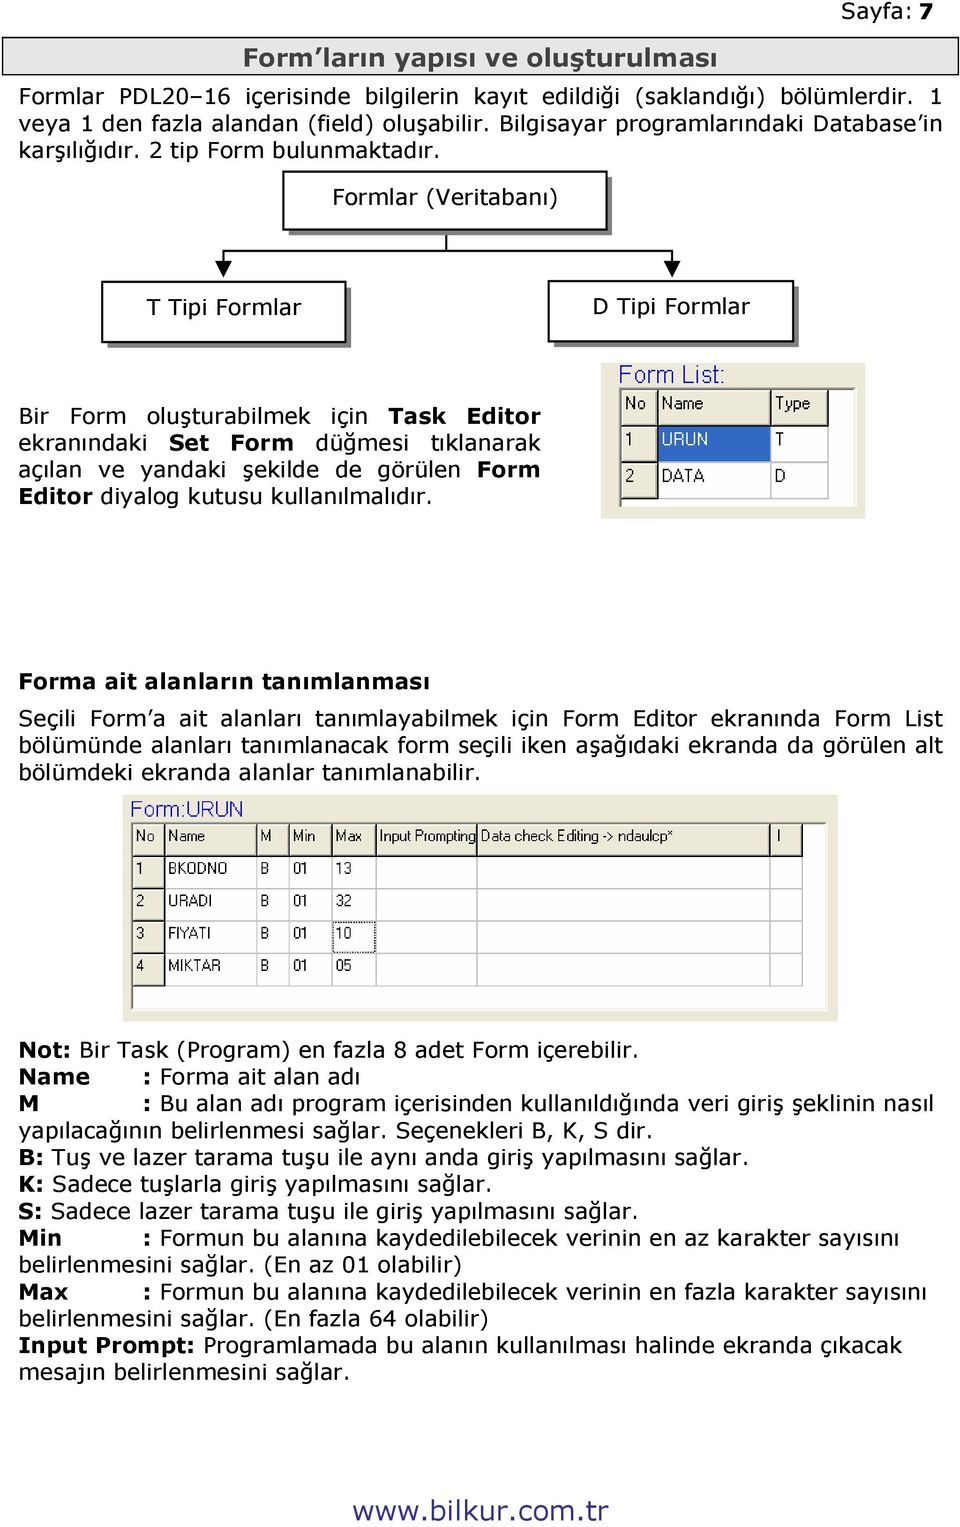 Formlar (Veritabanı) T Tipi Formlar D Tipi Formlar Bir Form oluşturabilmek için Task Editor ekranındaki Set Form düğmesi tıklanarak açılan ve yandaki şekilde de görülen Form Editor diyalog kutusu